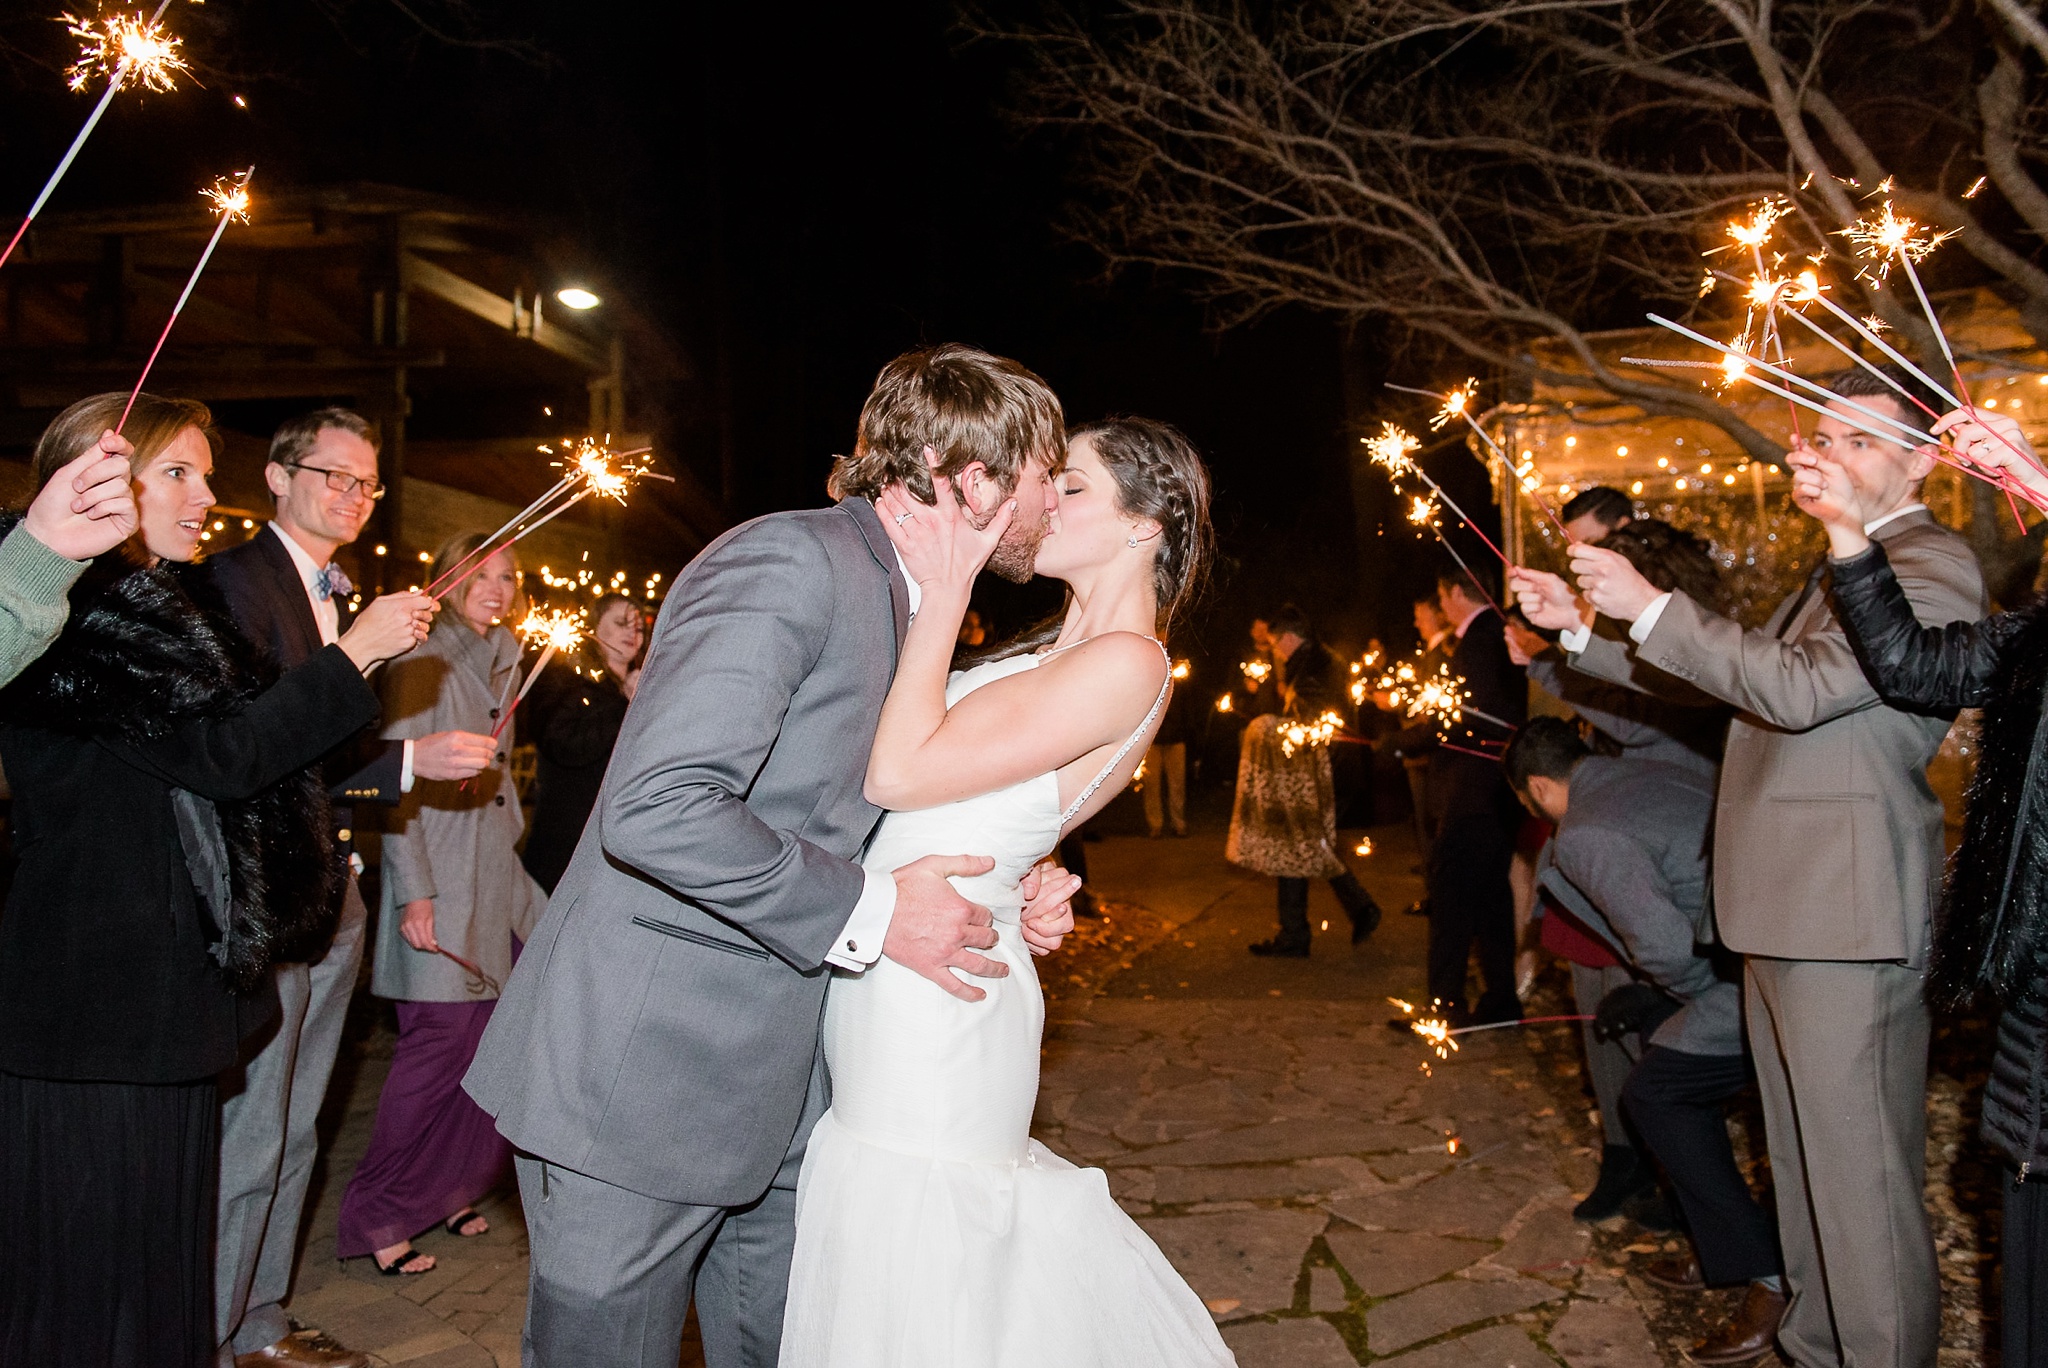 Snowy Winter Aldridge Gardens Wedding | Birmingham Alabama Wedding Photographers_0053.jpg